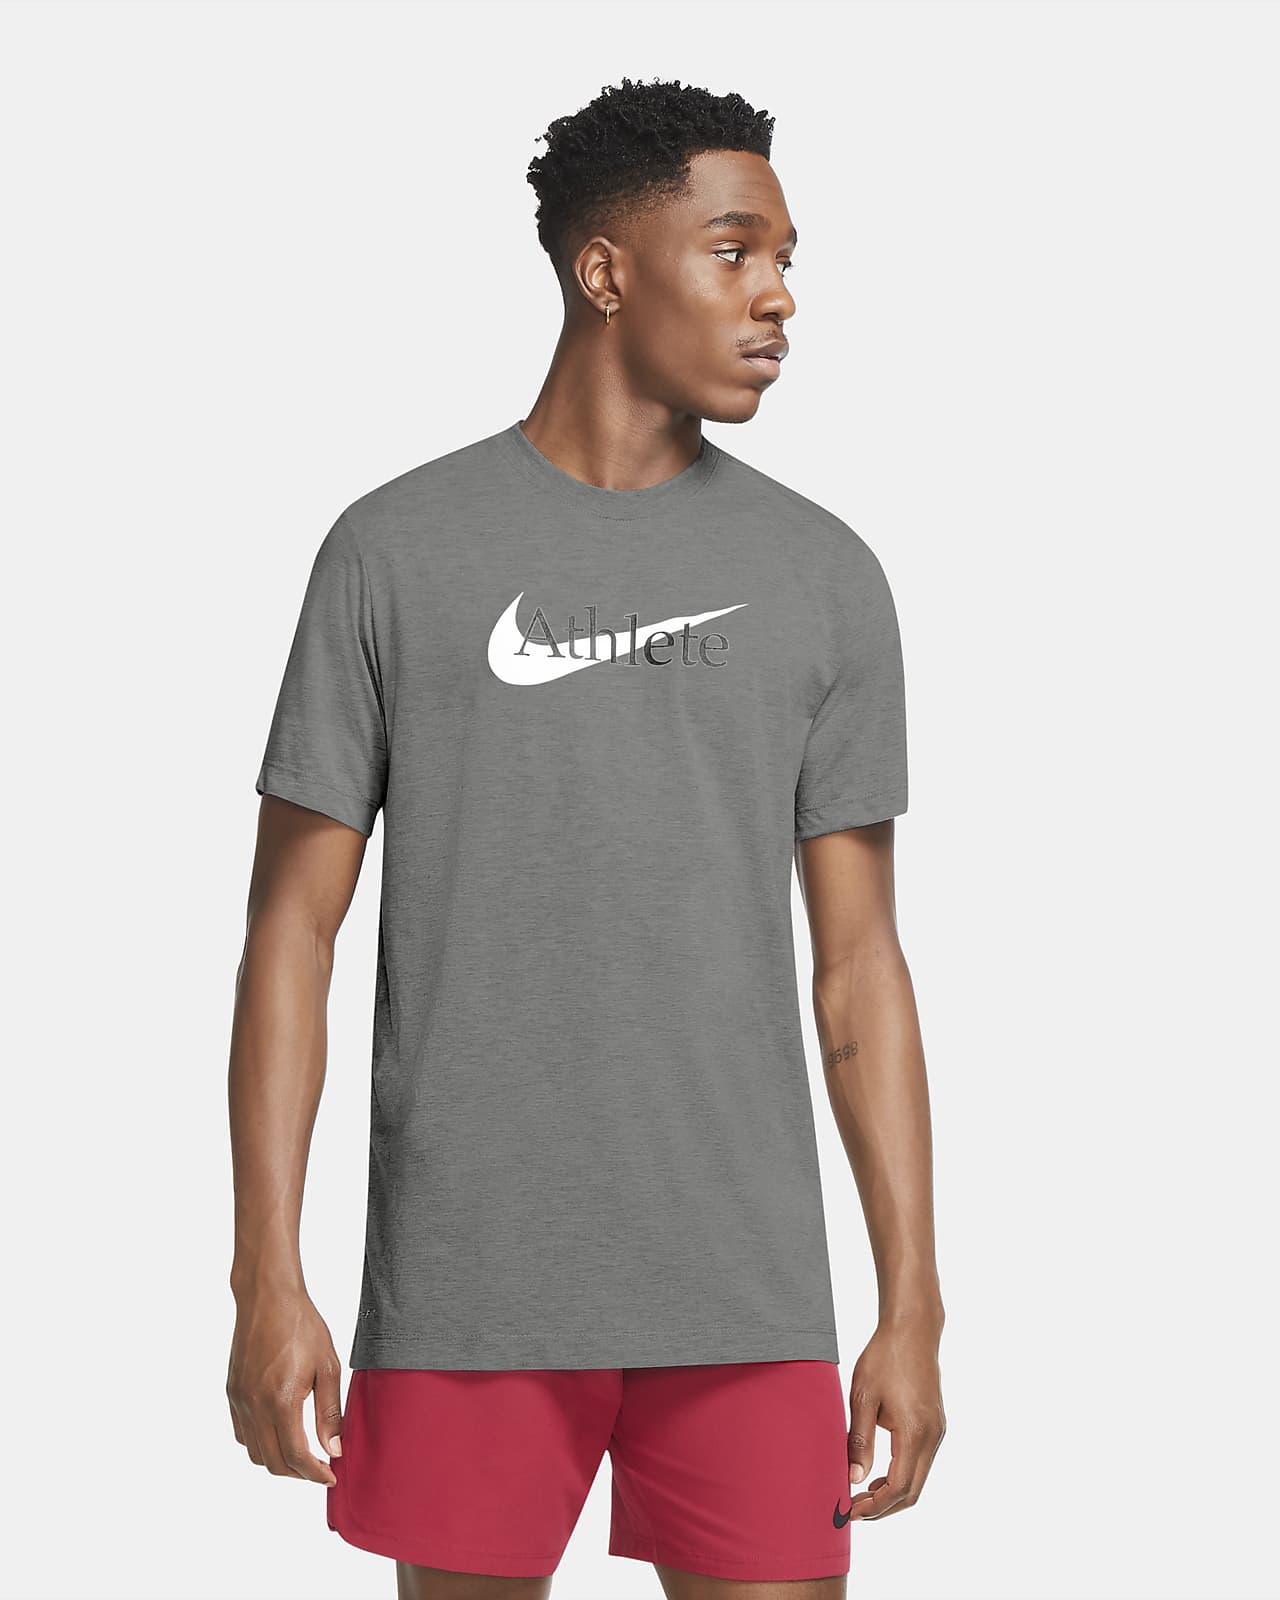 Nike Dri-FIT Men's Swoosh Training T-Shirt. Nike.com